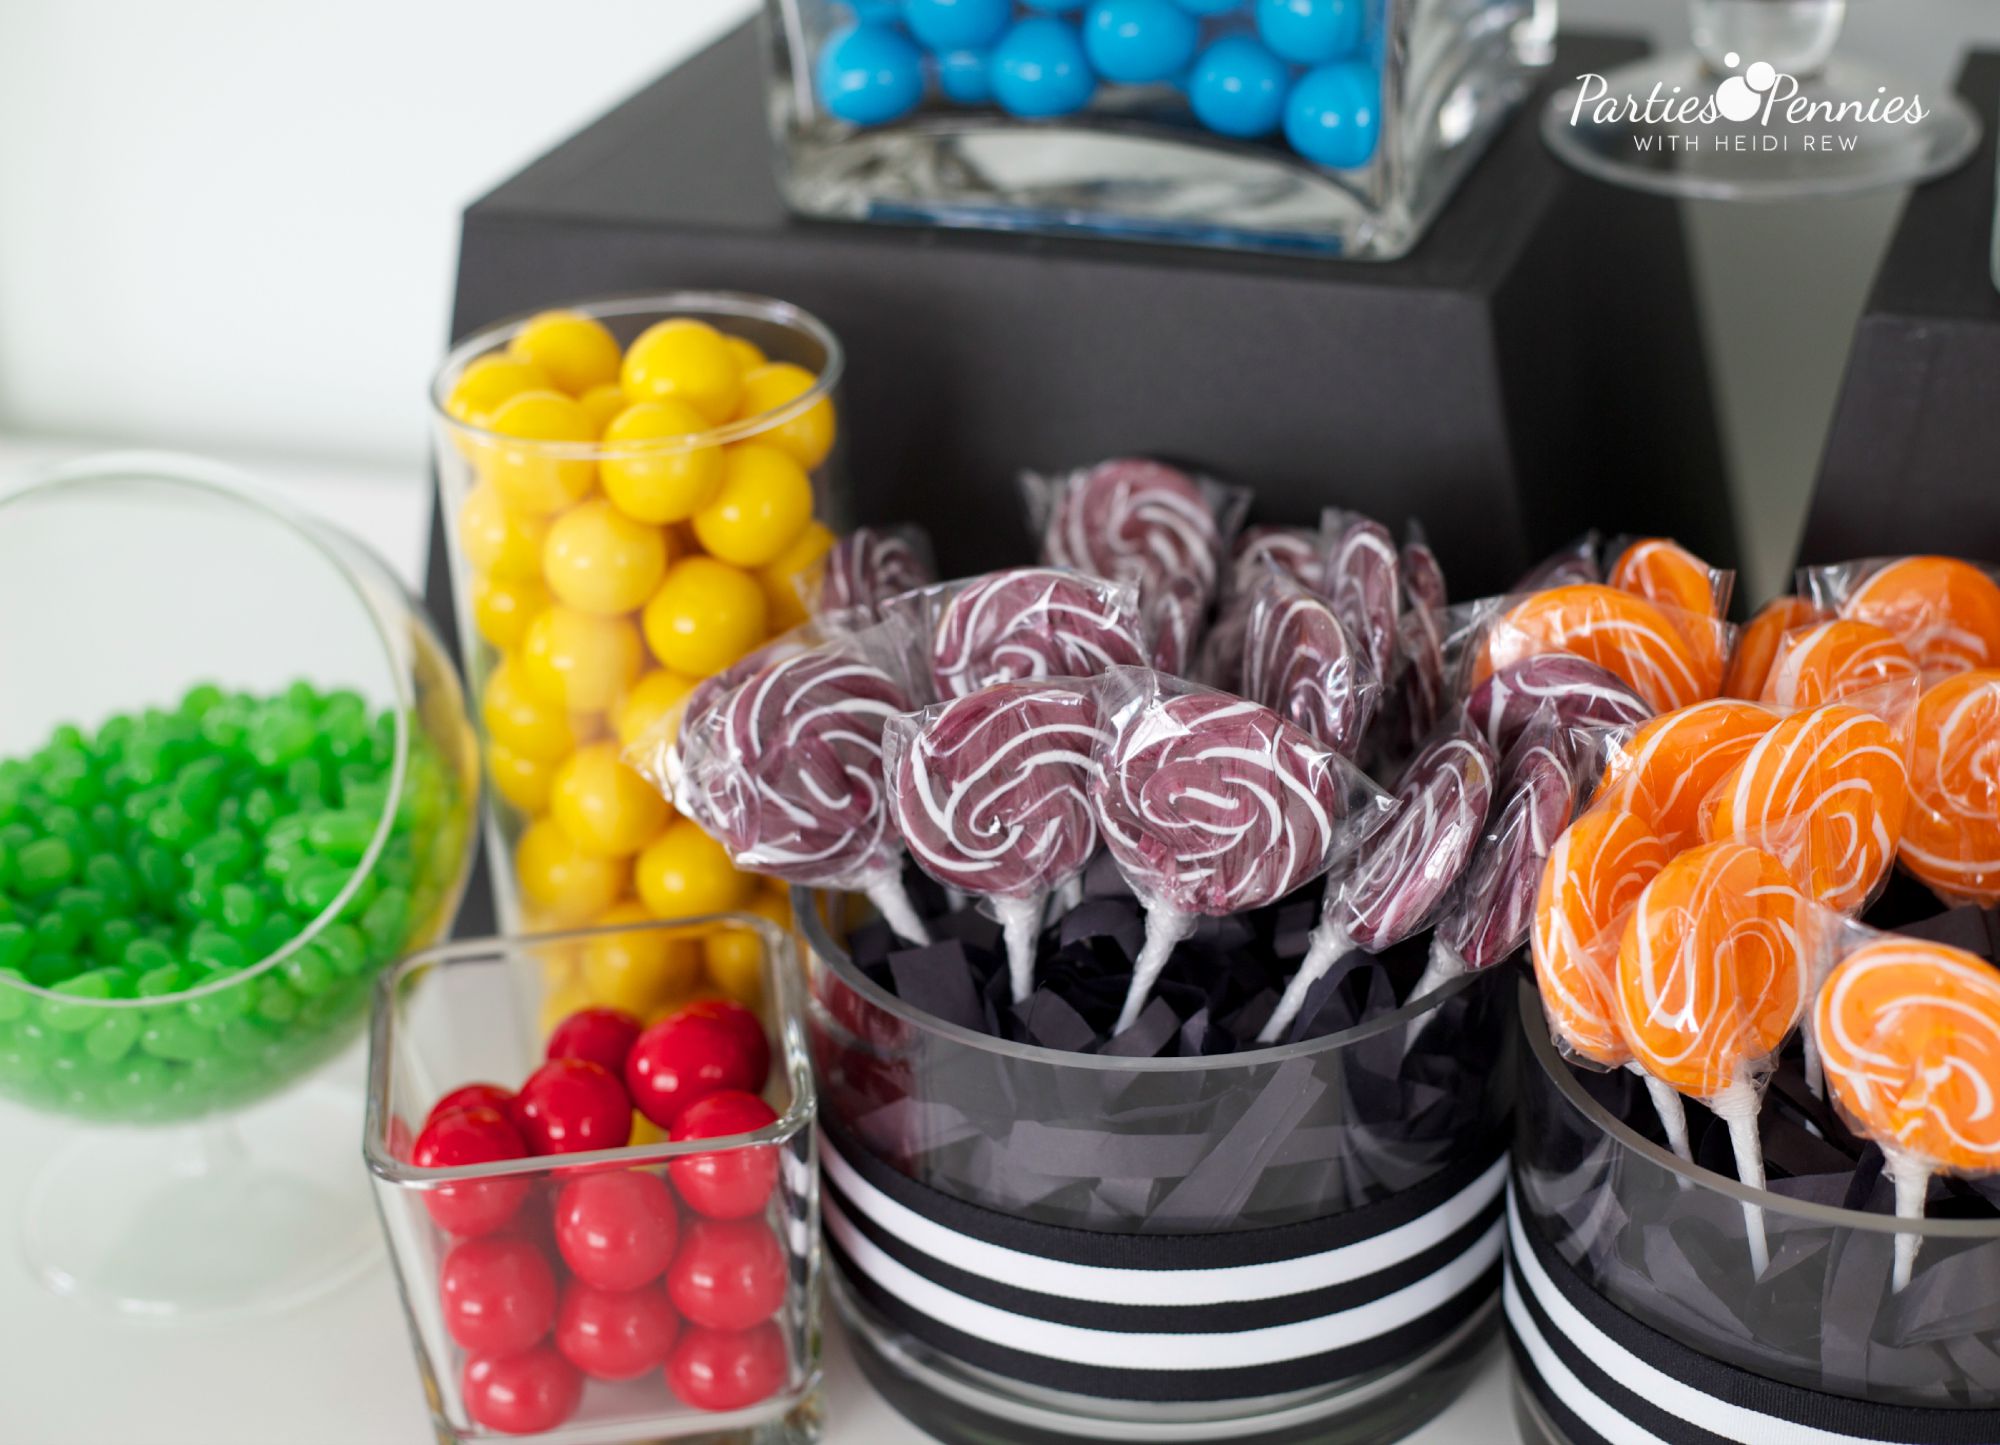 Best Prices for Bulk Candy | PartiesforPennies.com | #candybuffett #wedding #bulkcandy